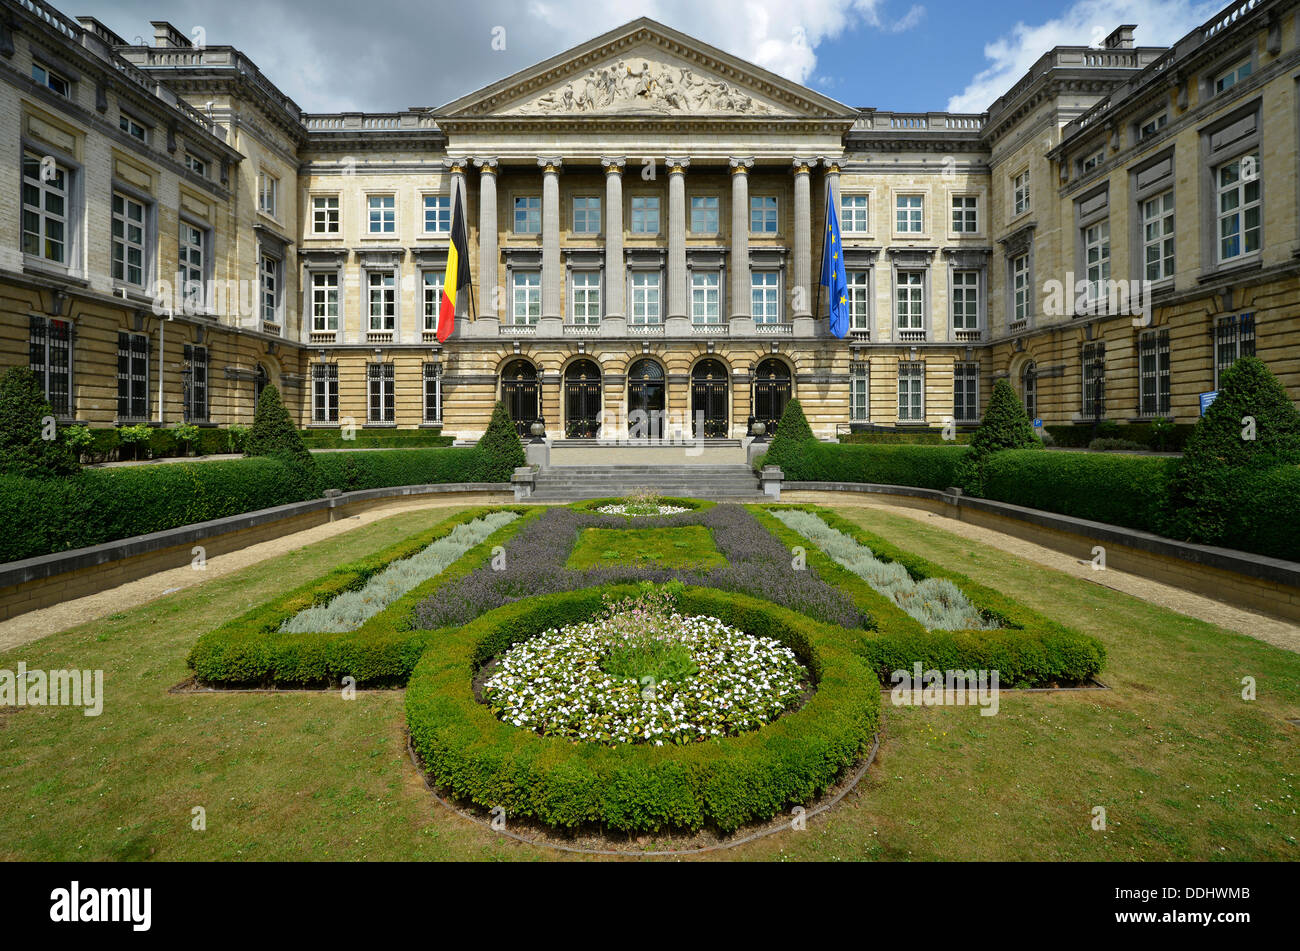 Palast der Nation, der Sitz des belgischen Bundesparlaments Stockfoto